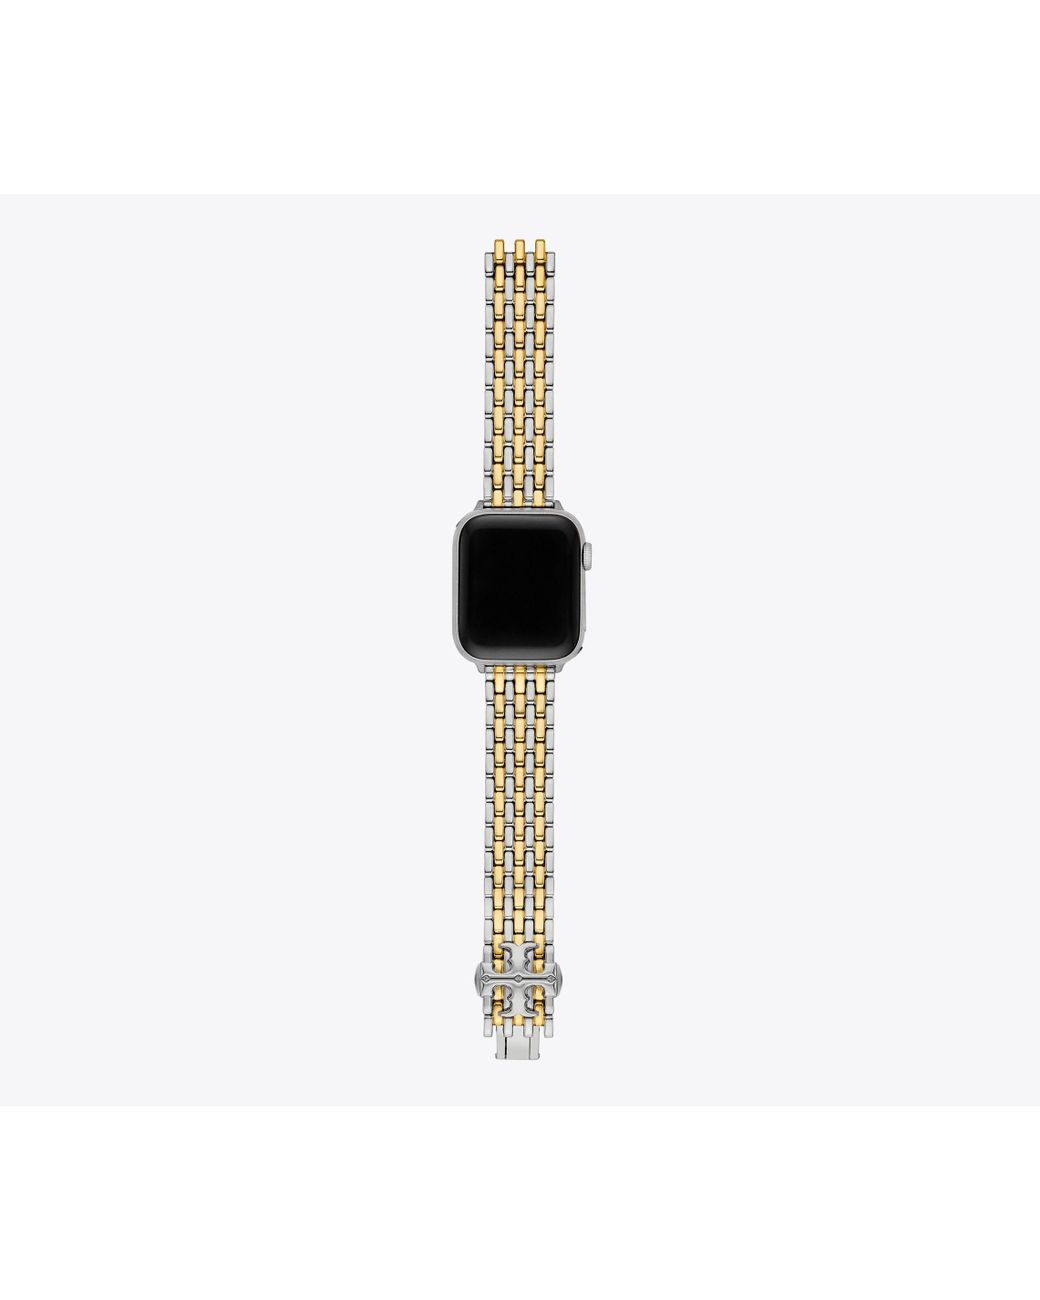 Tory Burch Reva Stainless Steel Apple Watch Bracelet in Two-Tone